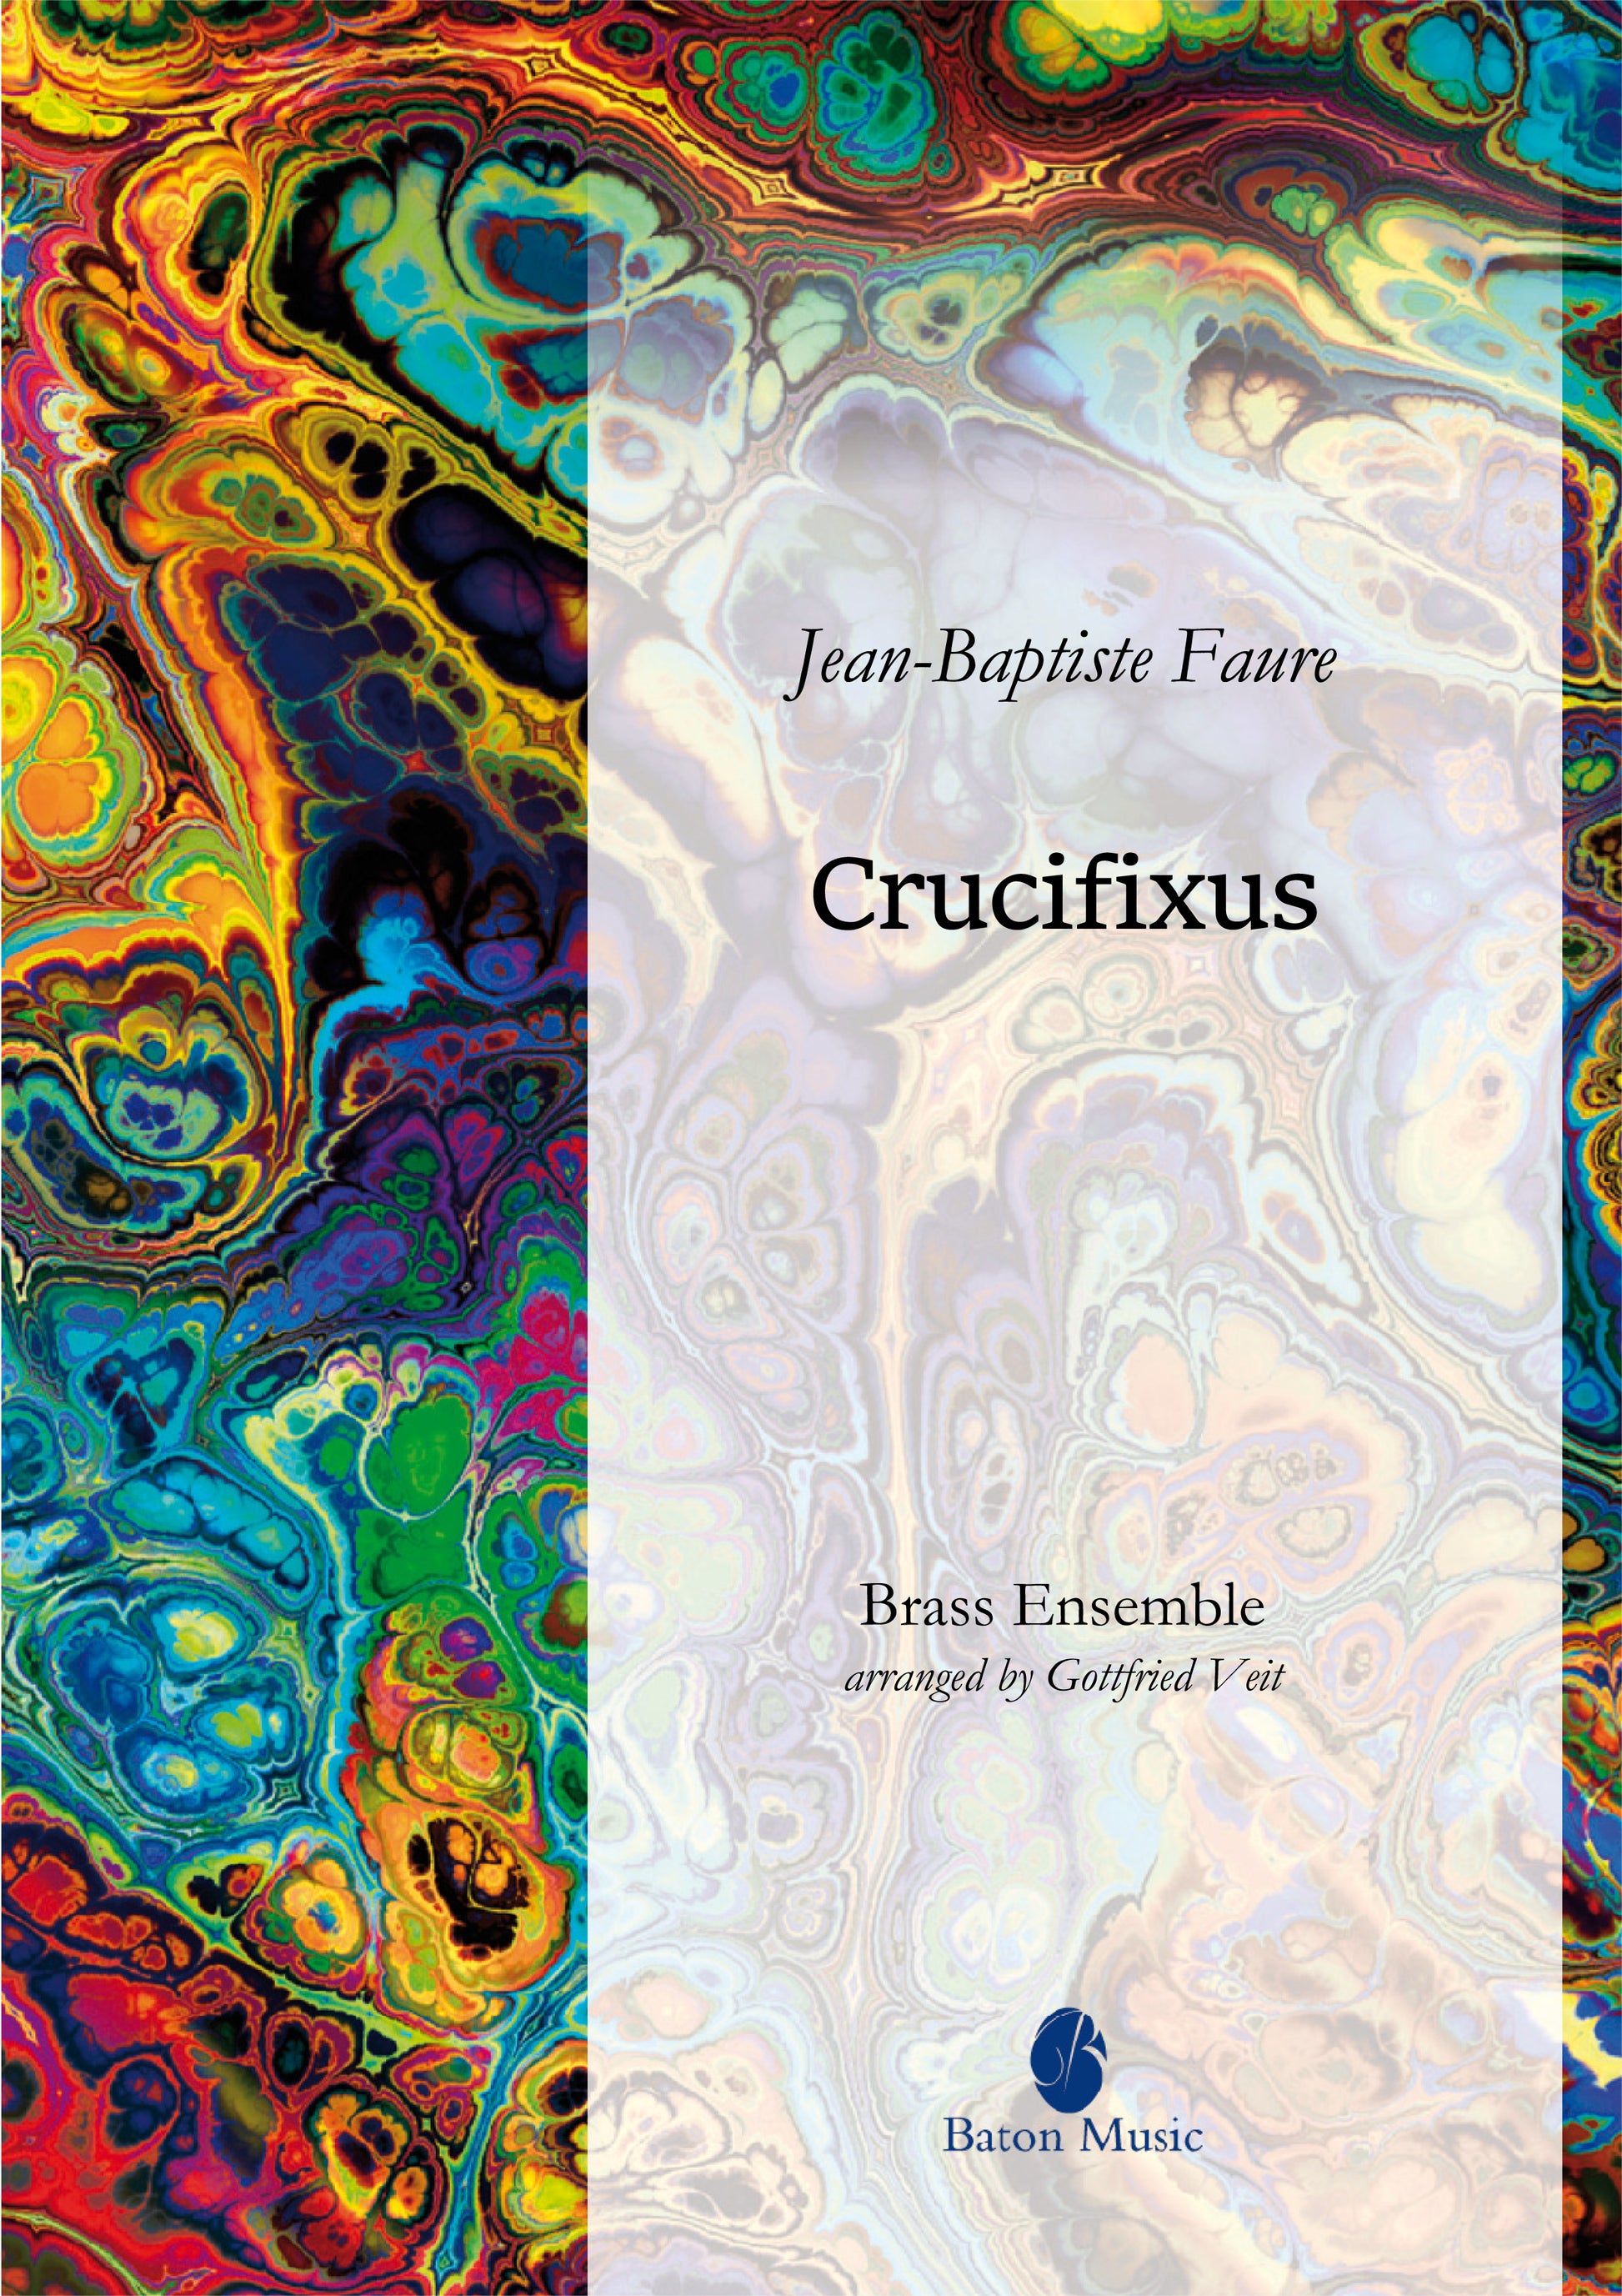 Jean-Baptiste Fauré ‘Crucifix vous qui pleurez